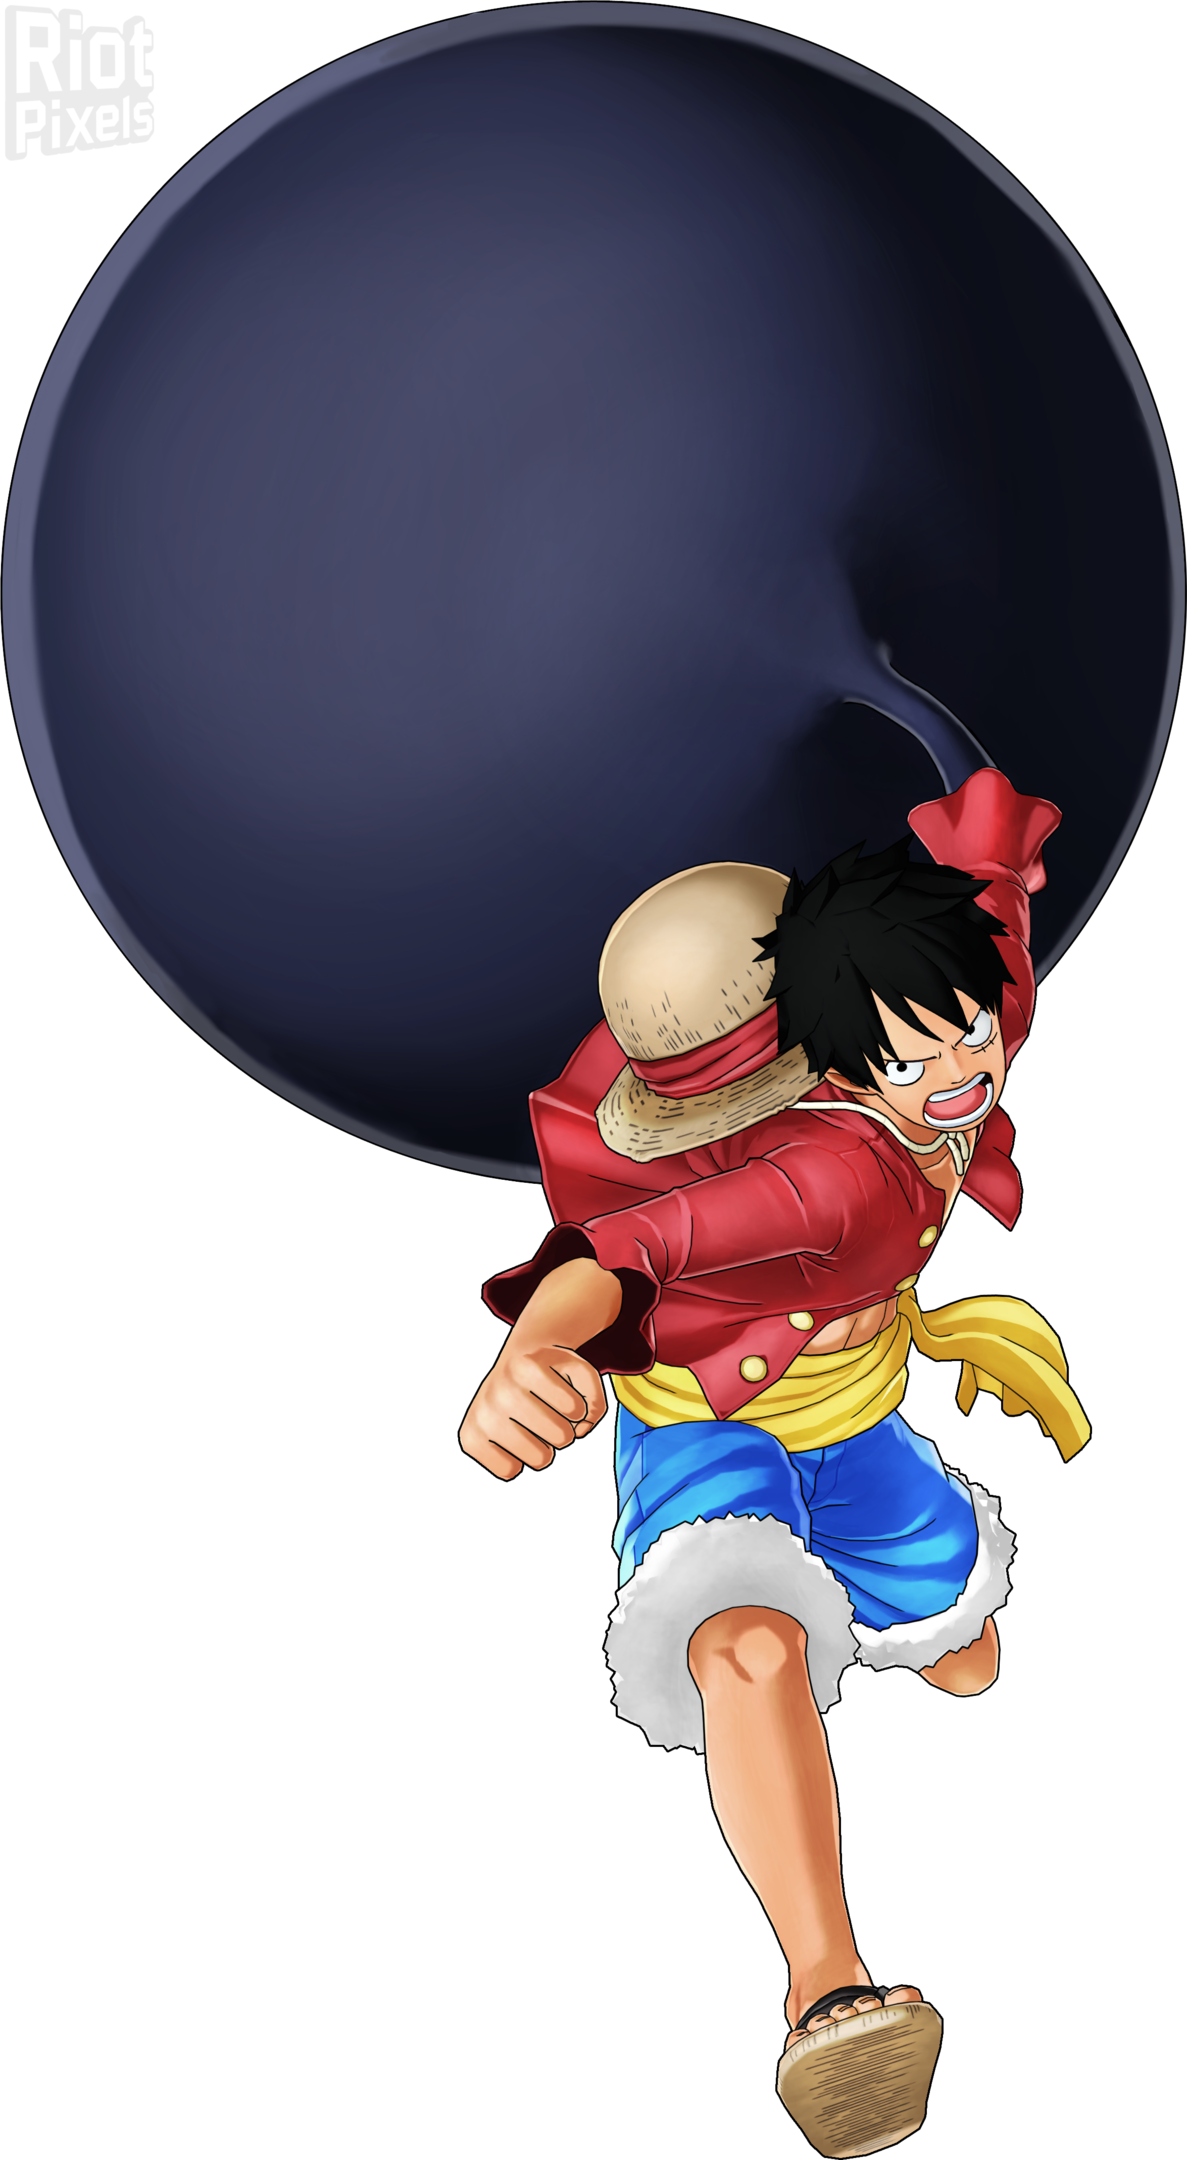 Le jeu vidéo One Piece World Seeker se dévoile en images - Bubble BD,  Comics et Mangas